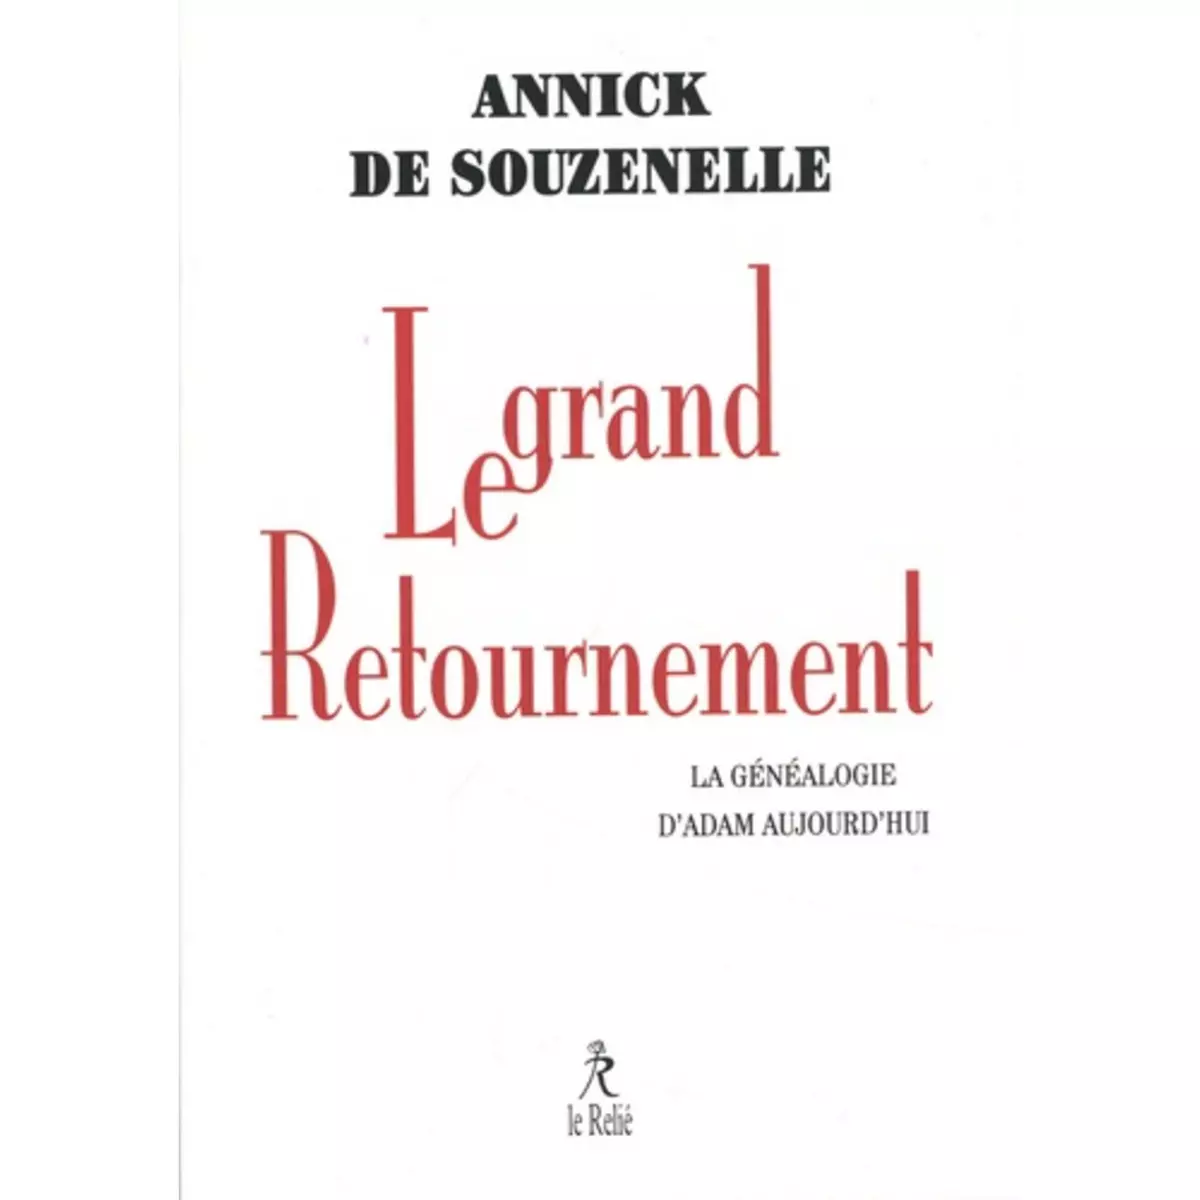  LE GRAND RETOURNEMENT. LA GENEALOGIE D'ADAM AUJOURD'HUI, Souzenelle Annick de